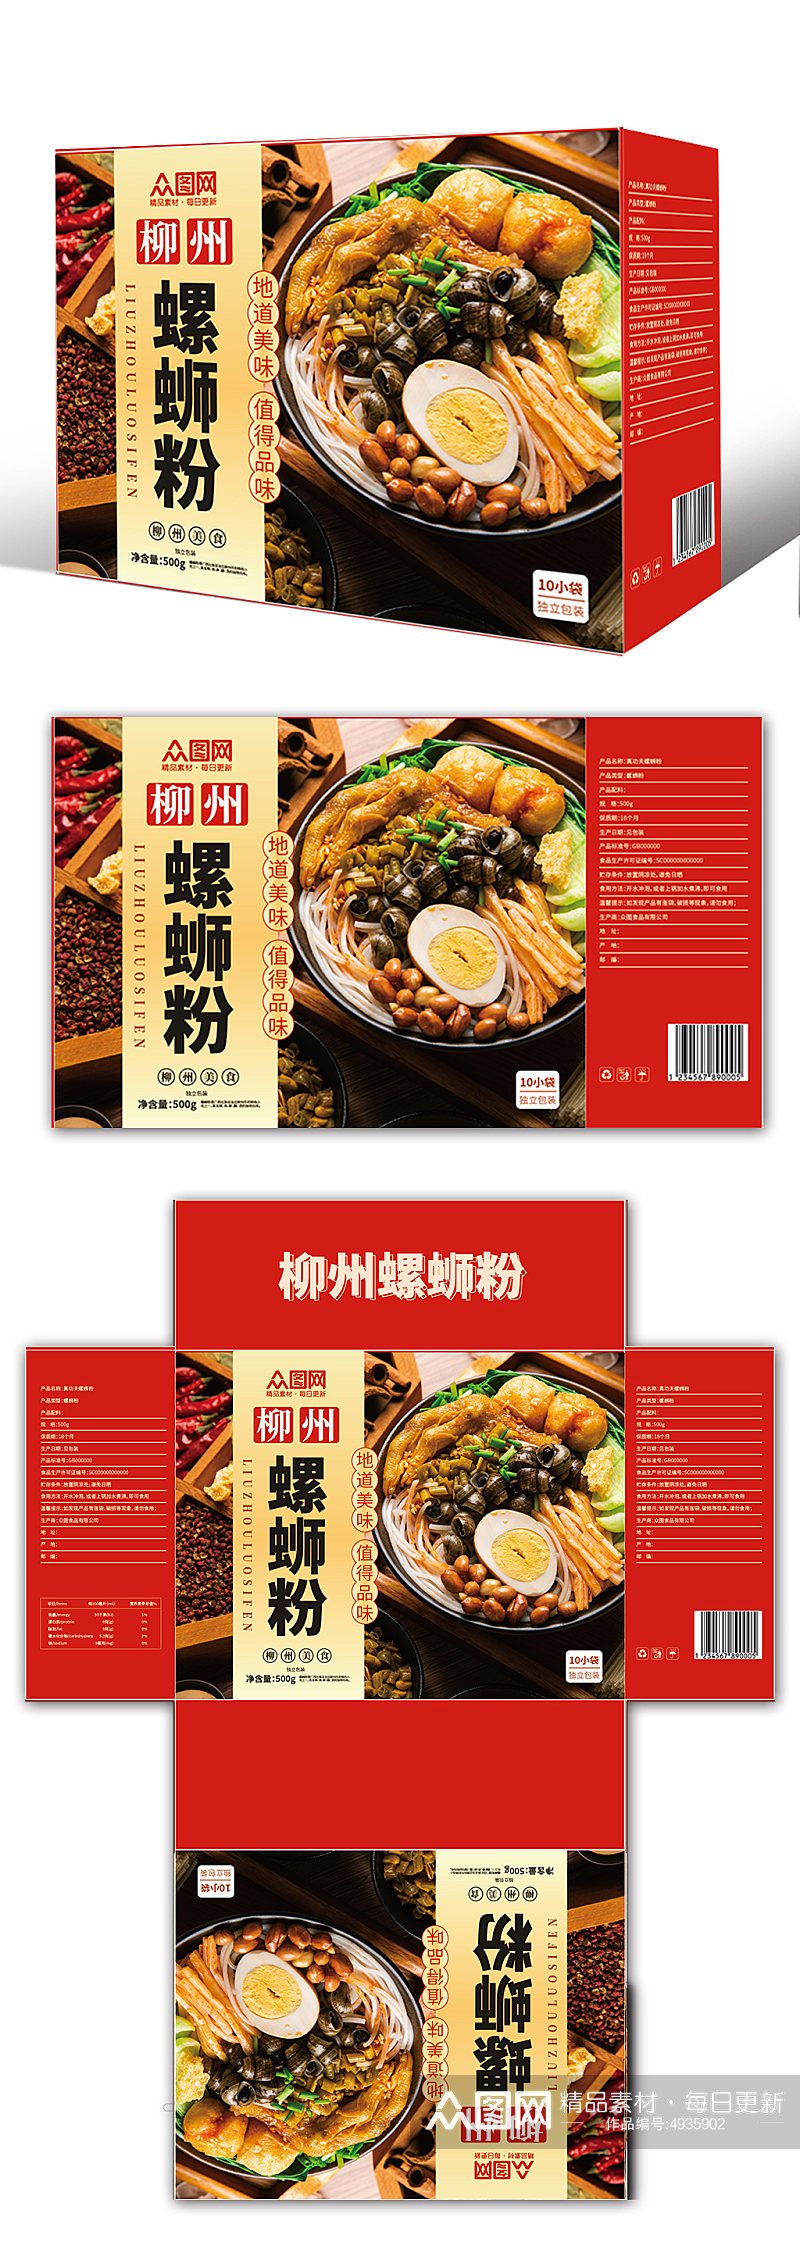 柳州美食螺蛳粉米粉手提袋礼盒包装设计素材